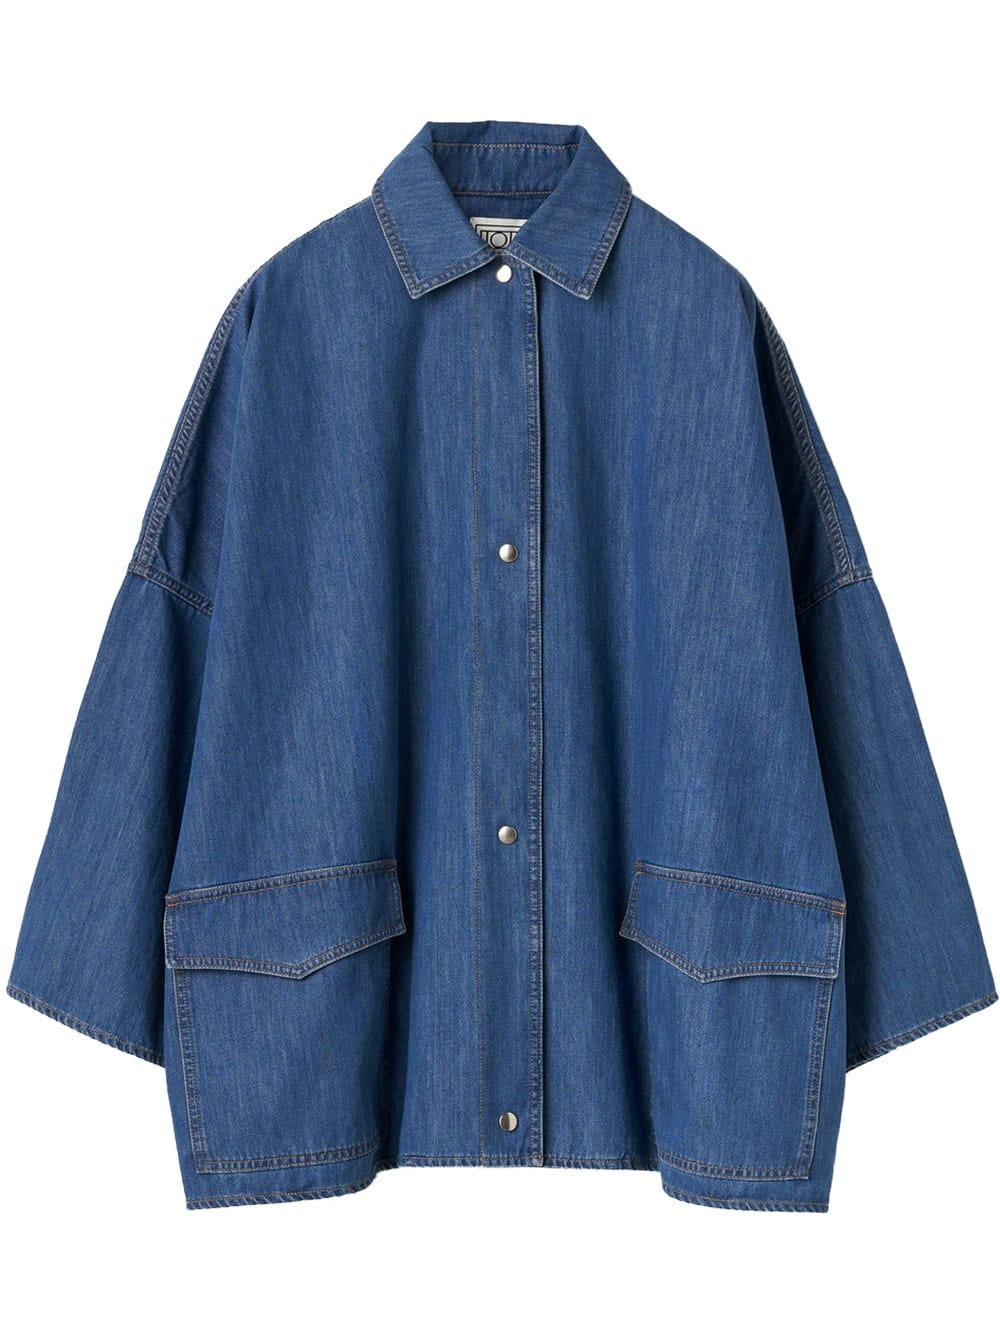 Toteme denim overshirt jacket (Size: XS/S) product